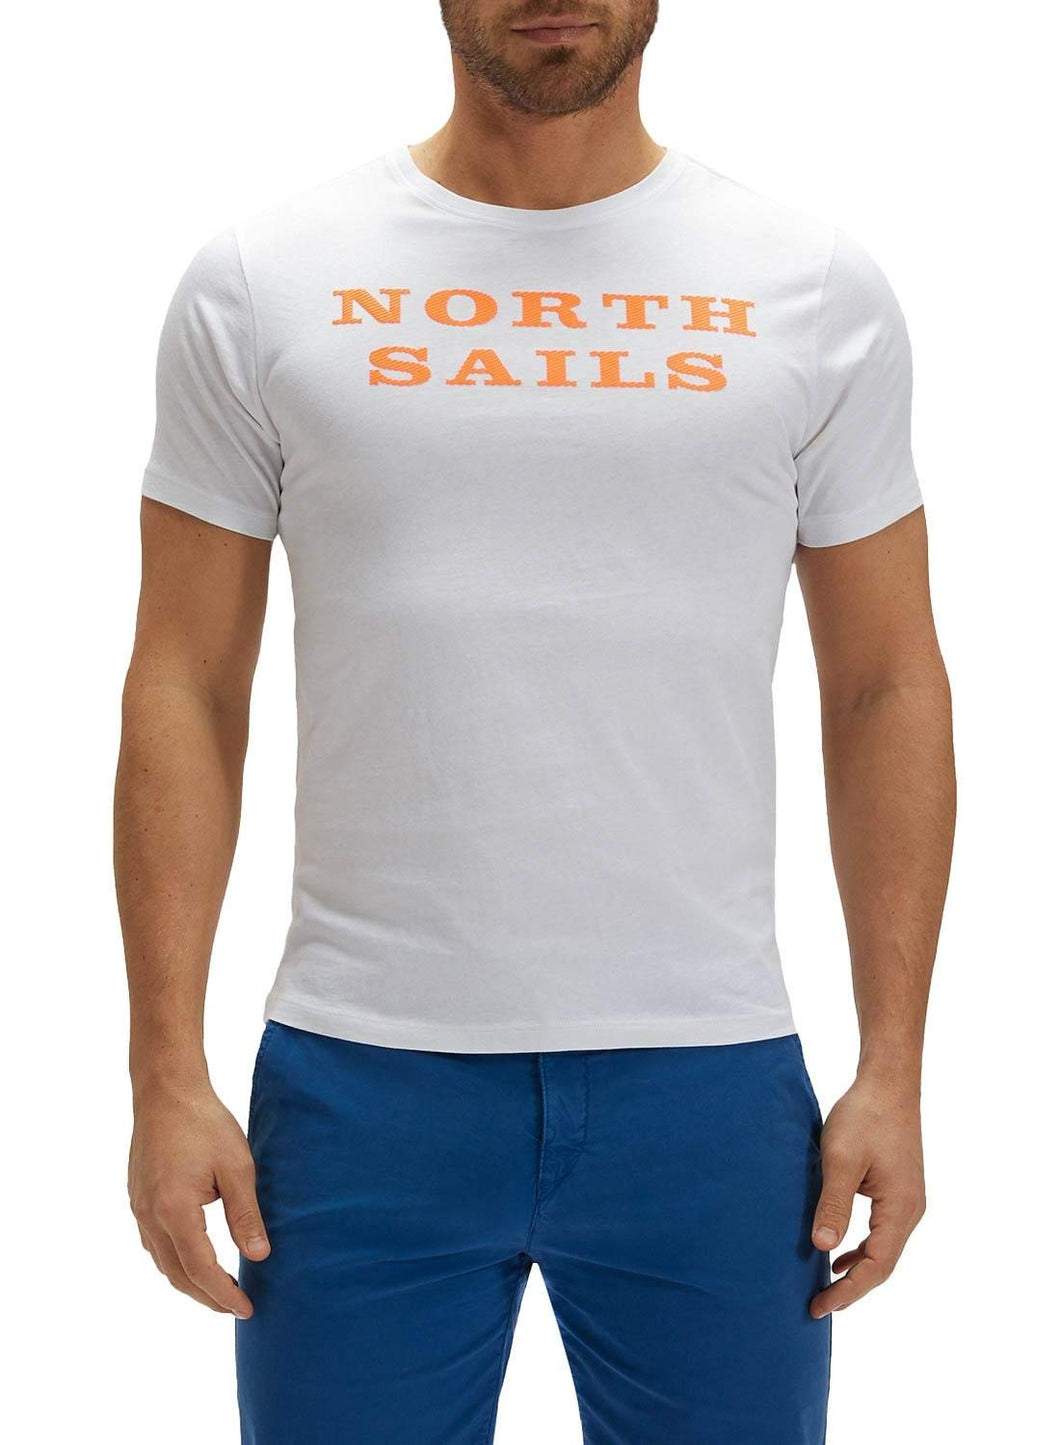 NORTH SAILS T-Shirt da Uomo in Jersey di Colore Bianco - 100% Cotone Biologico - vestibilità Regolare - Leggera con Girocollo e Maniche Corte - XL